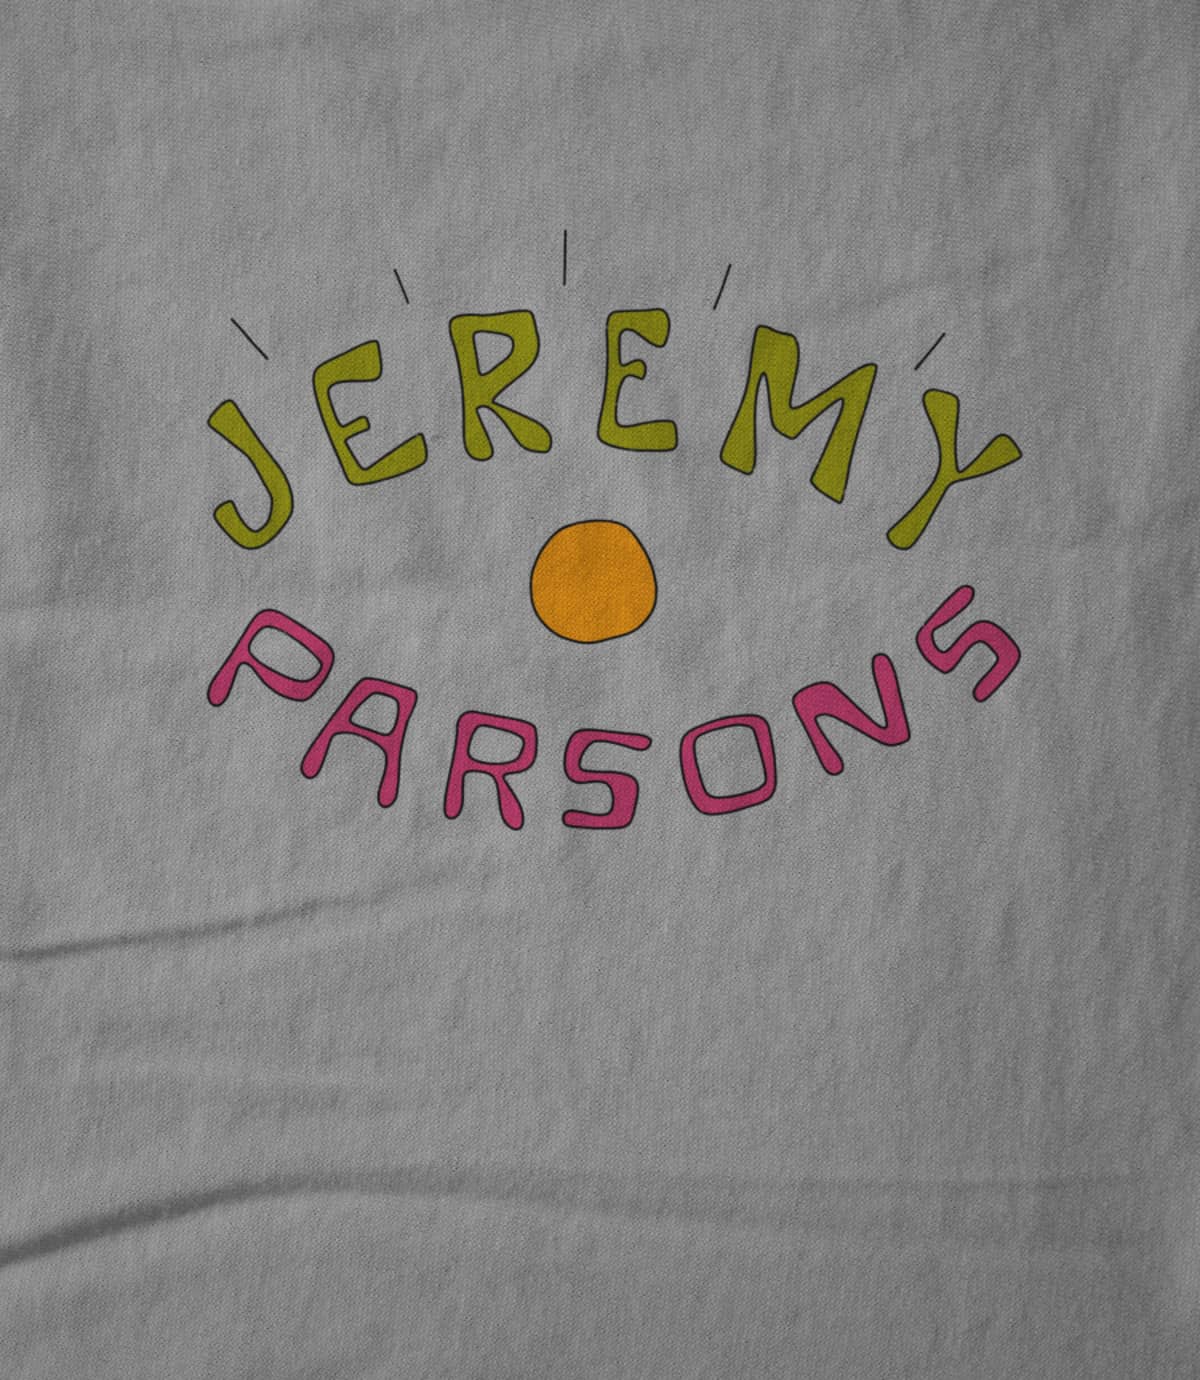 Jeremy Parsons